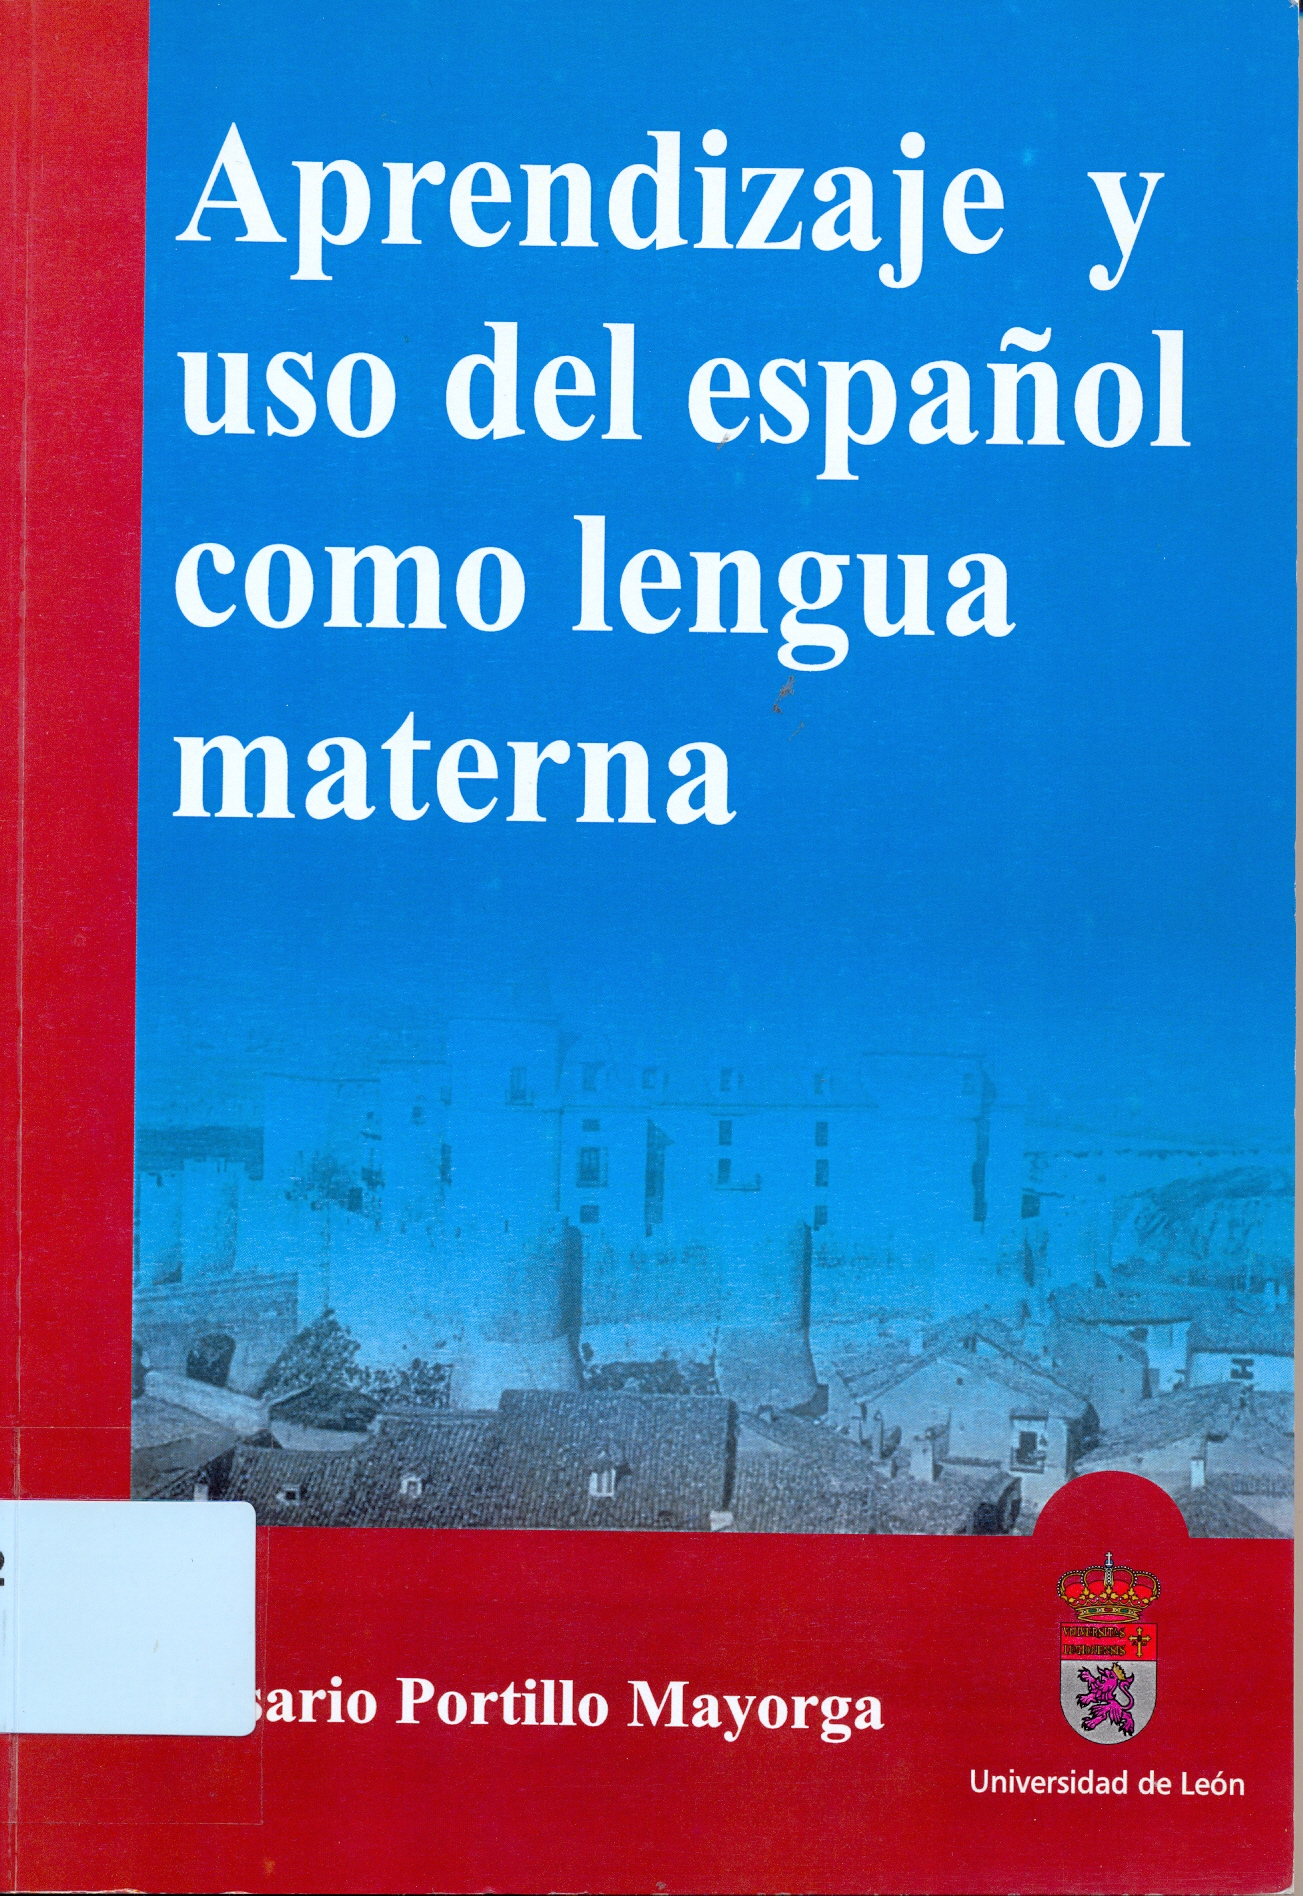 Imagen de portada del libro Aprendizaje y uso del español como lengua materna